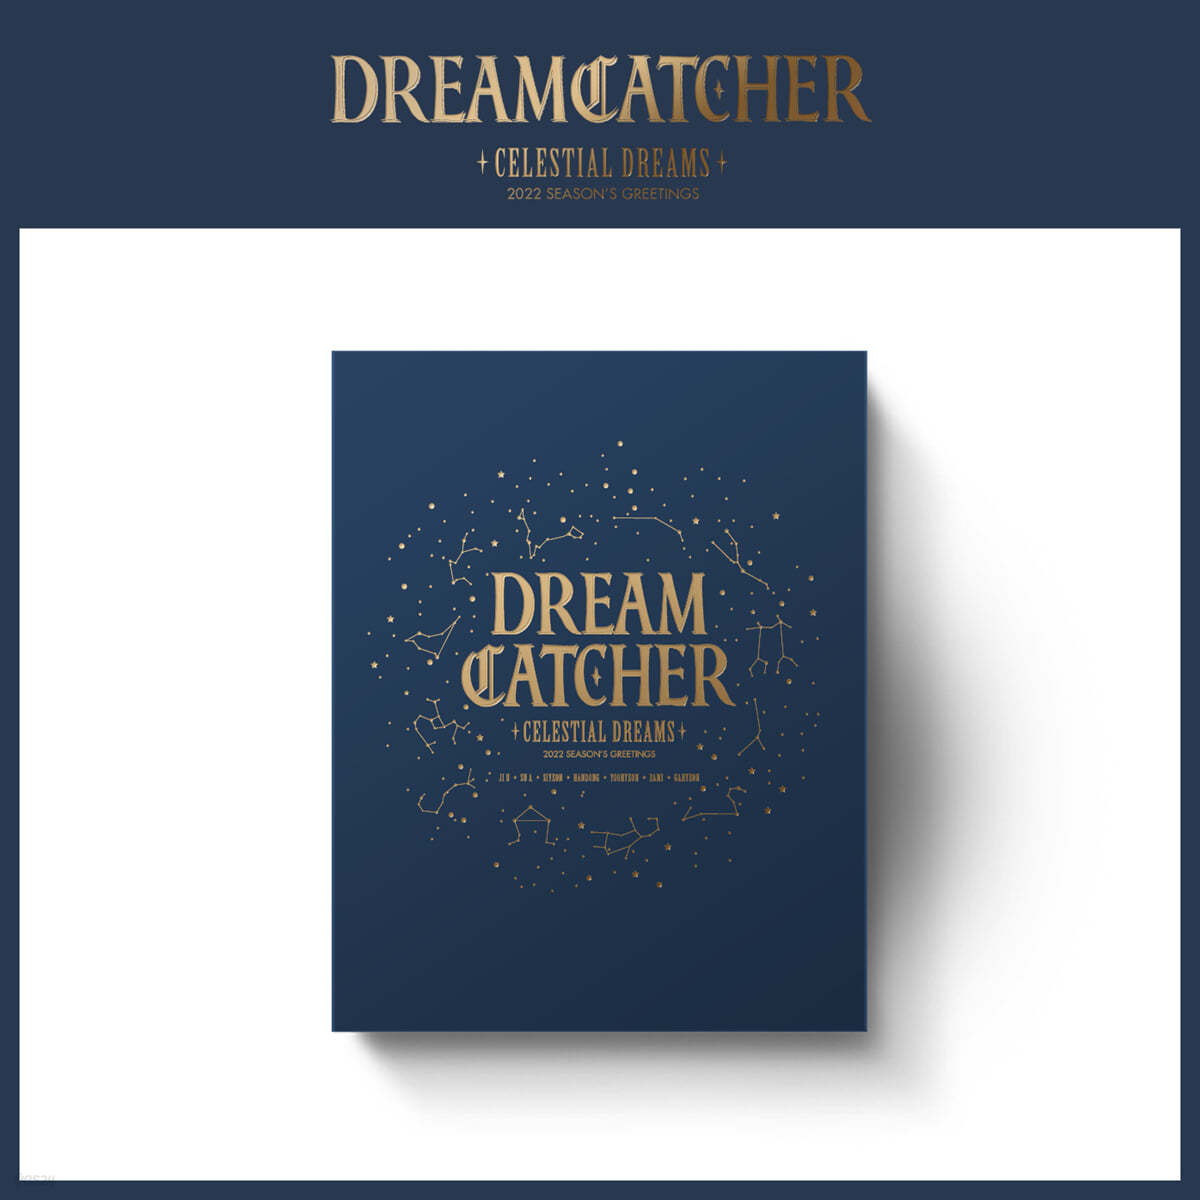 드림캐쳐 (Dreamcatcher) 2022 시즌 그리팅 [CELESTIAL DREAM ver.]